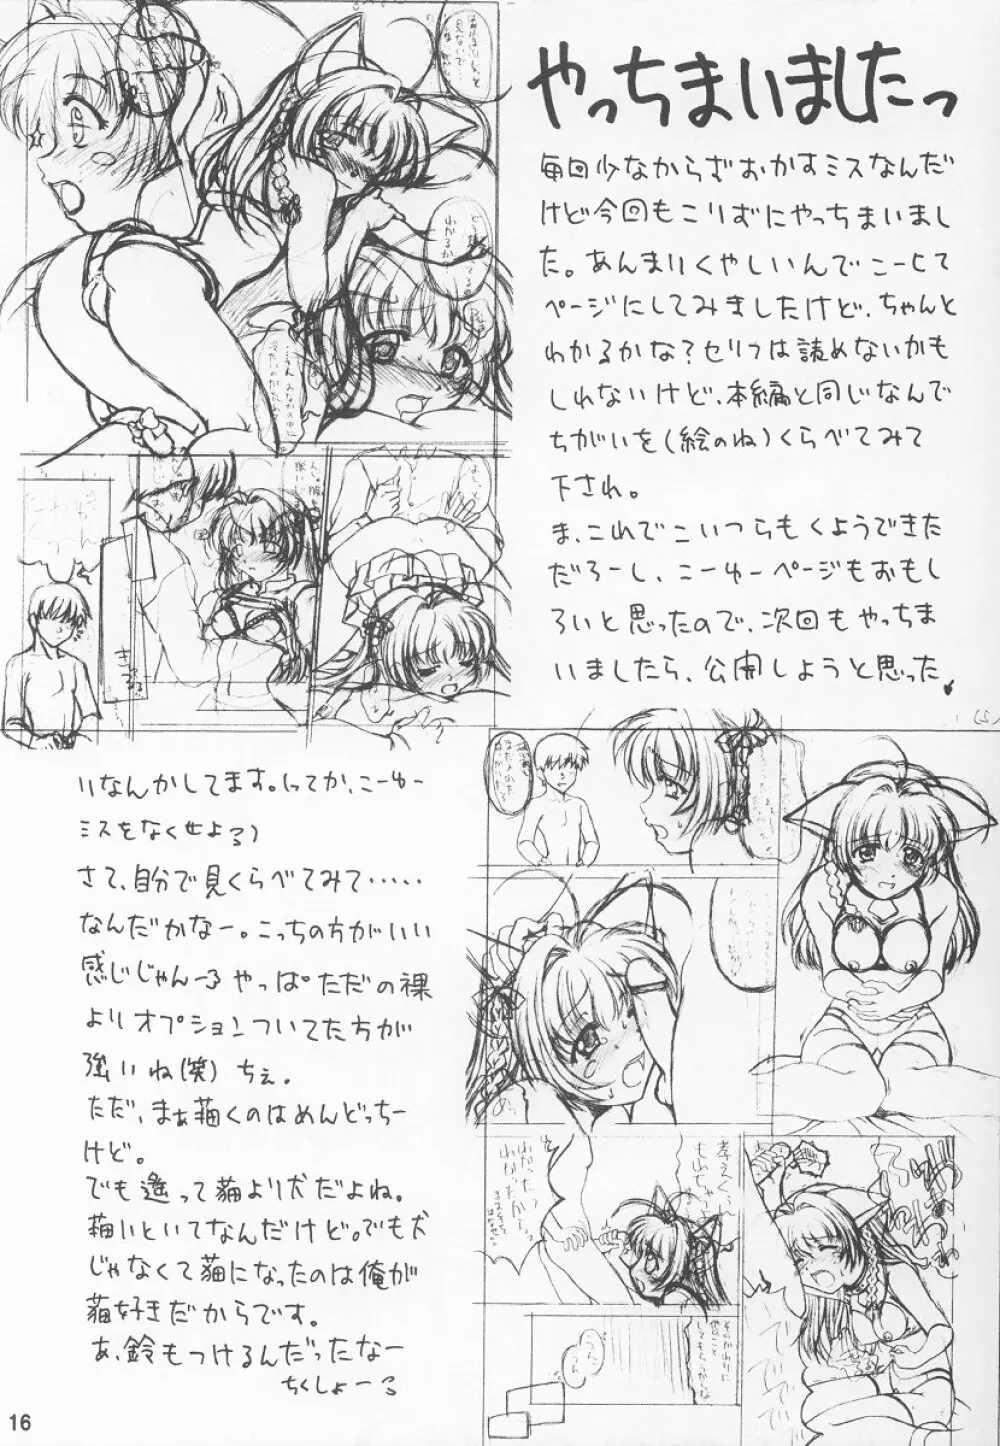 遙望2 -Kiminozo Book 2002 Winter- 15ページ